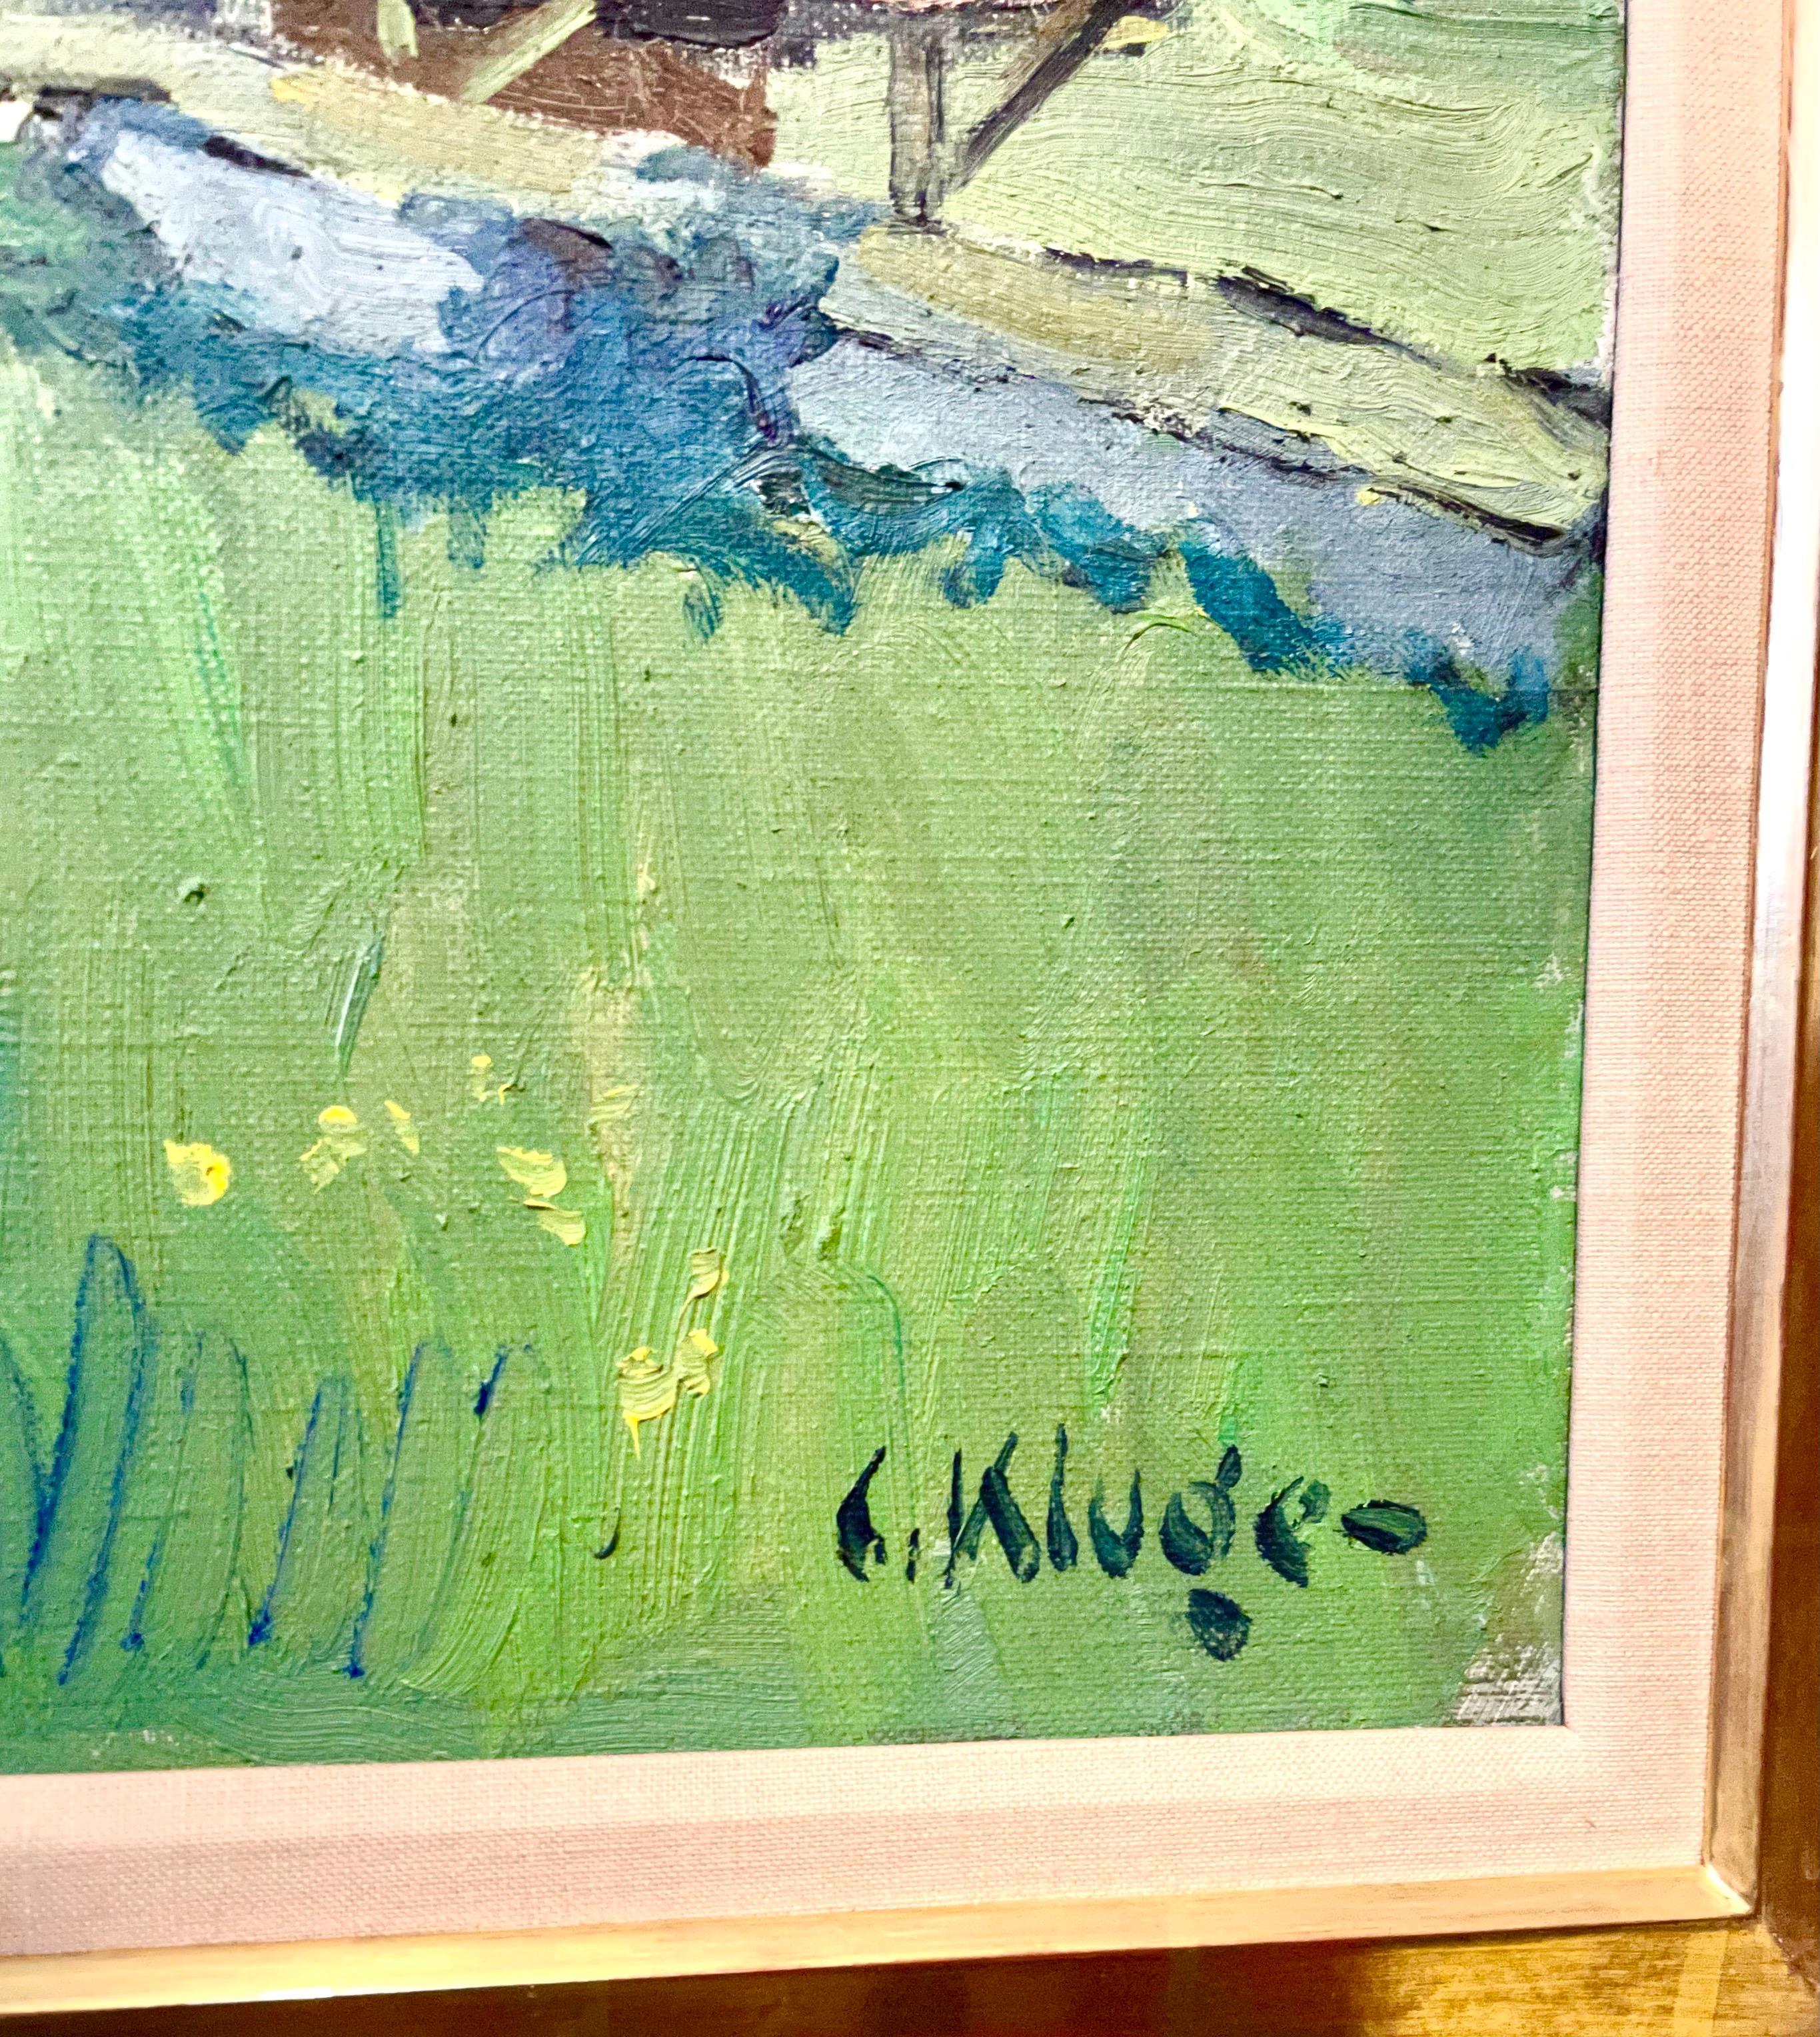 Constantine Kluge (français 1912-2003) 
Les Pommiers en Fleurs
Huile sur toile représentant des pommiers en fleurs
Main signée en bas à droite. 
Provenance : acheté auprès de Wally Findlay Galleries. (porte leur étiquette au verso)
 Dimensions Art :